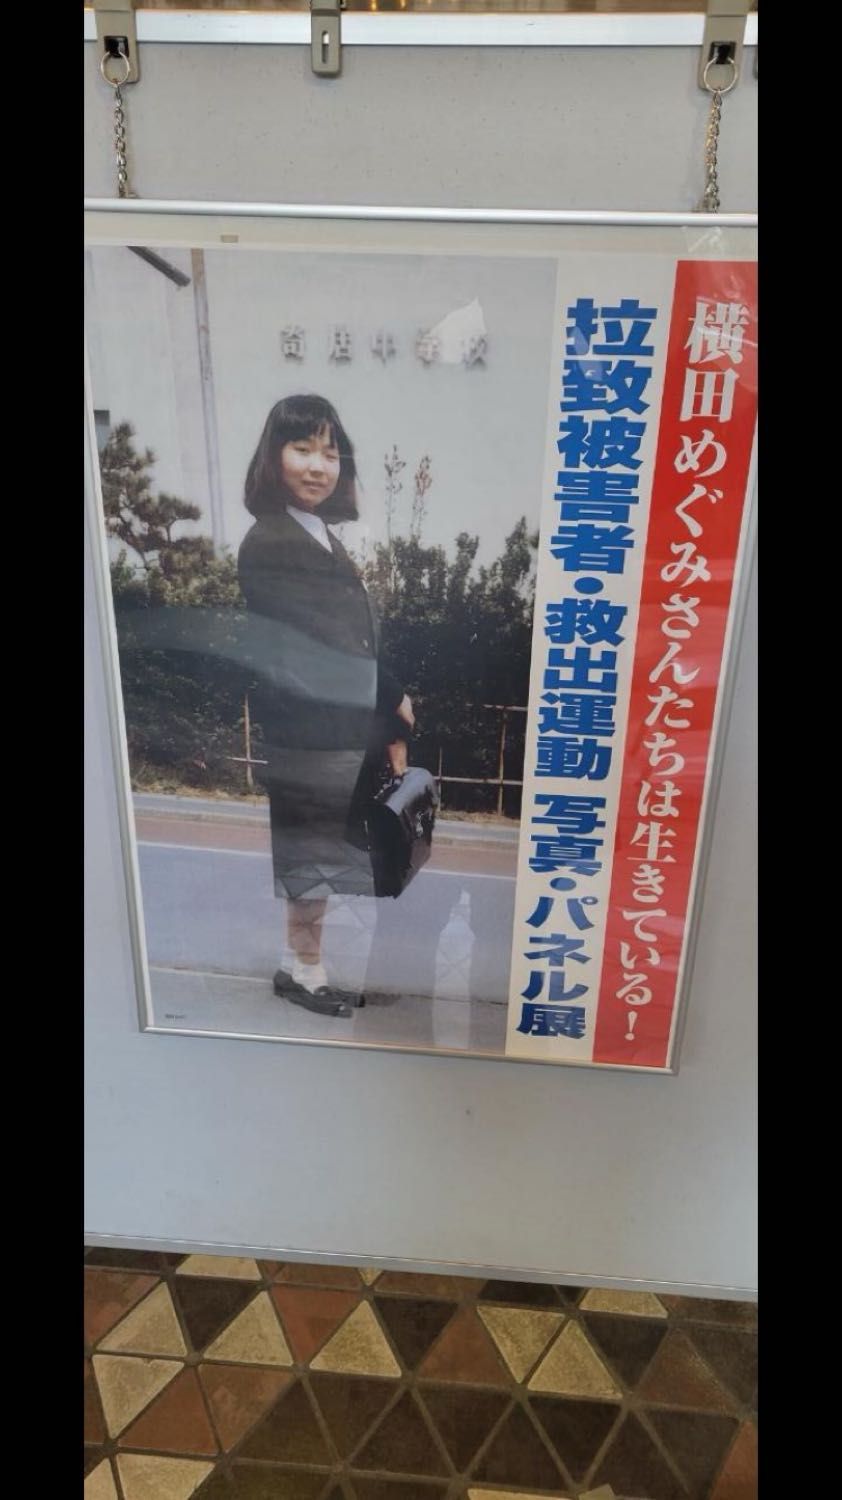 「拉致被害を風化させない」横田めぐみさんの写真など展示　人権侵害問題の啓発週間　認識深めて　札幌市